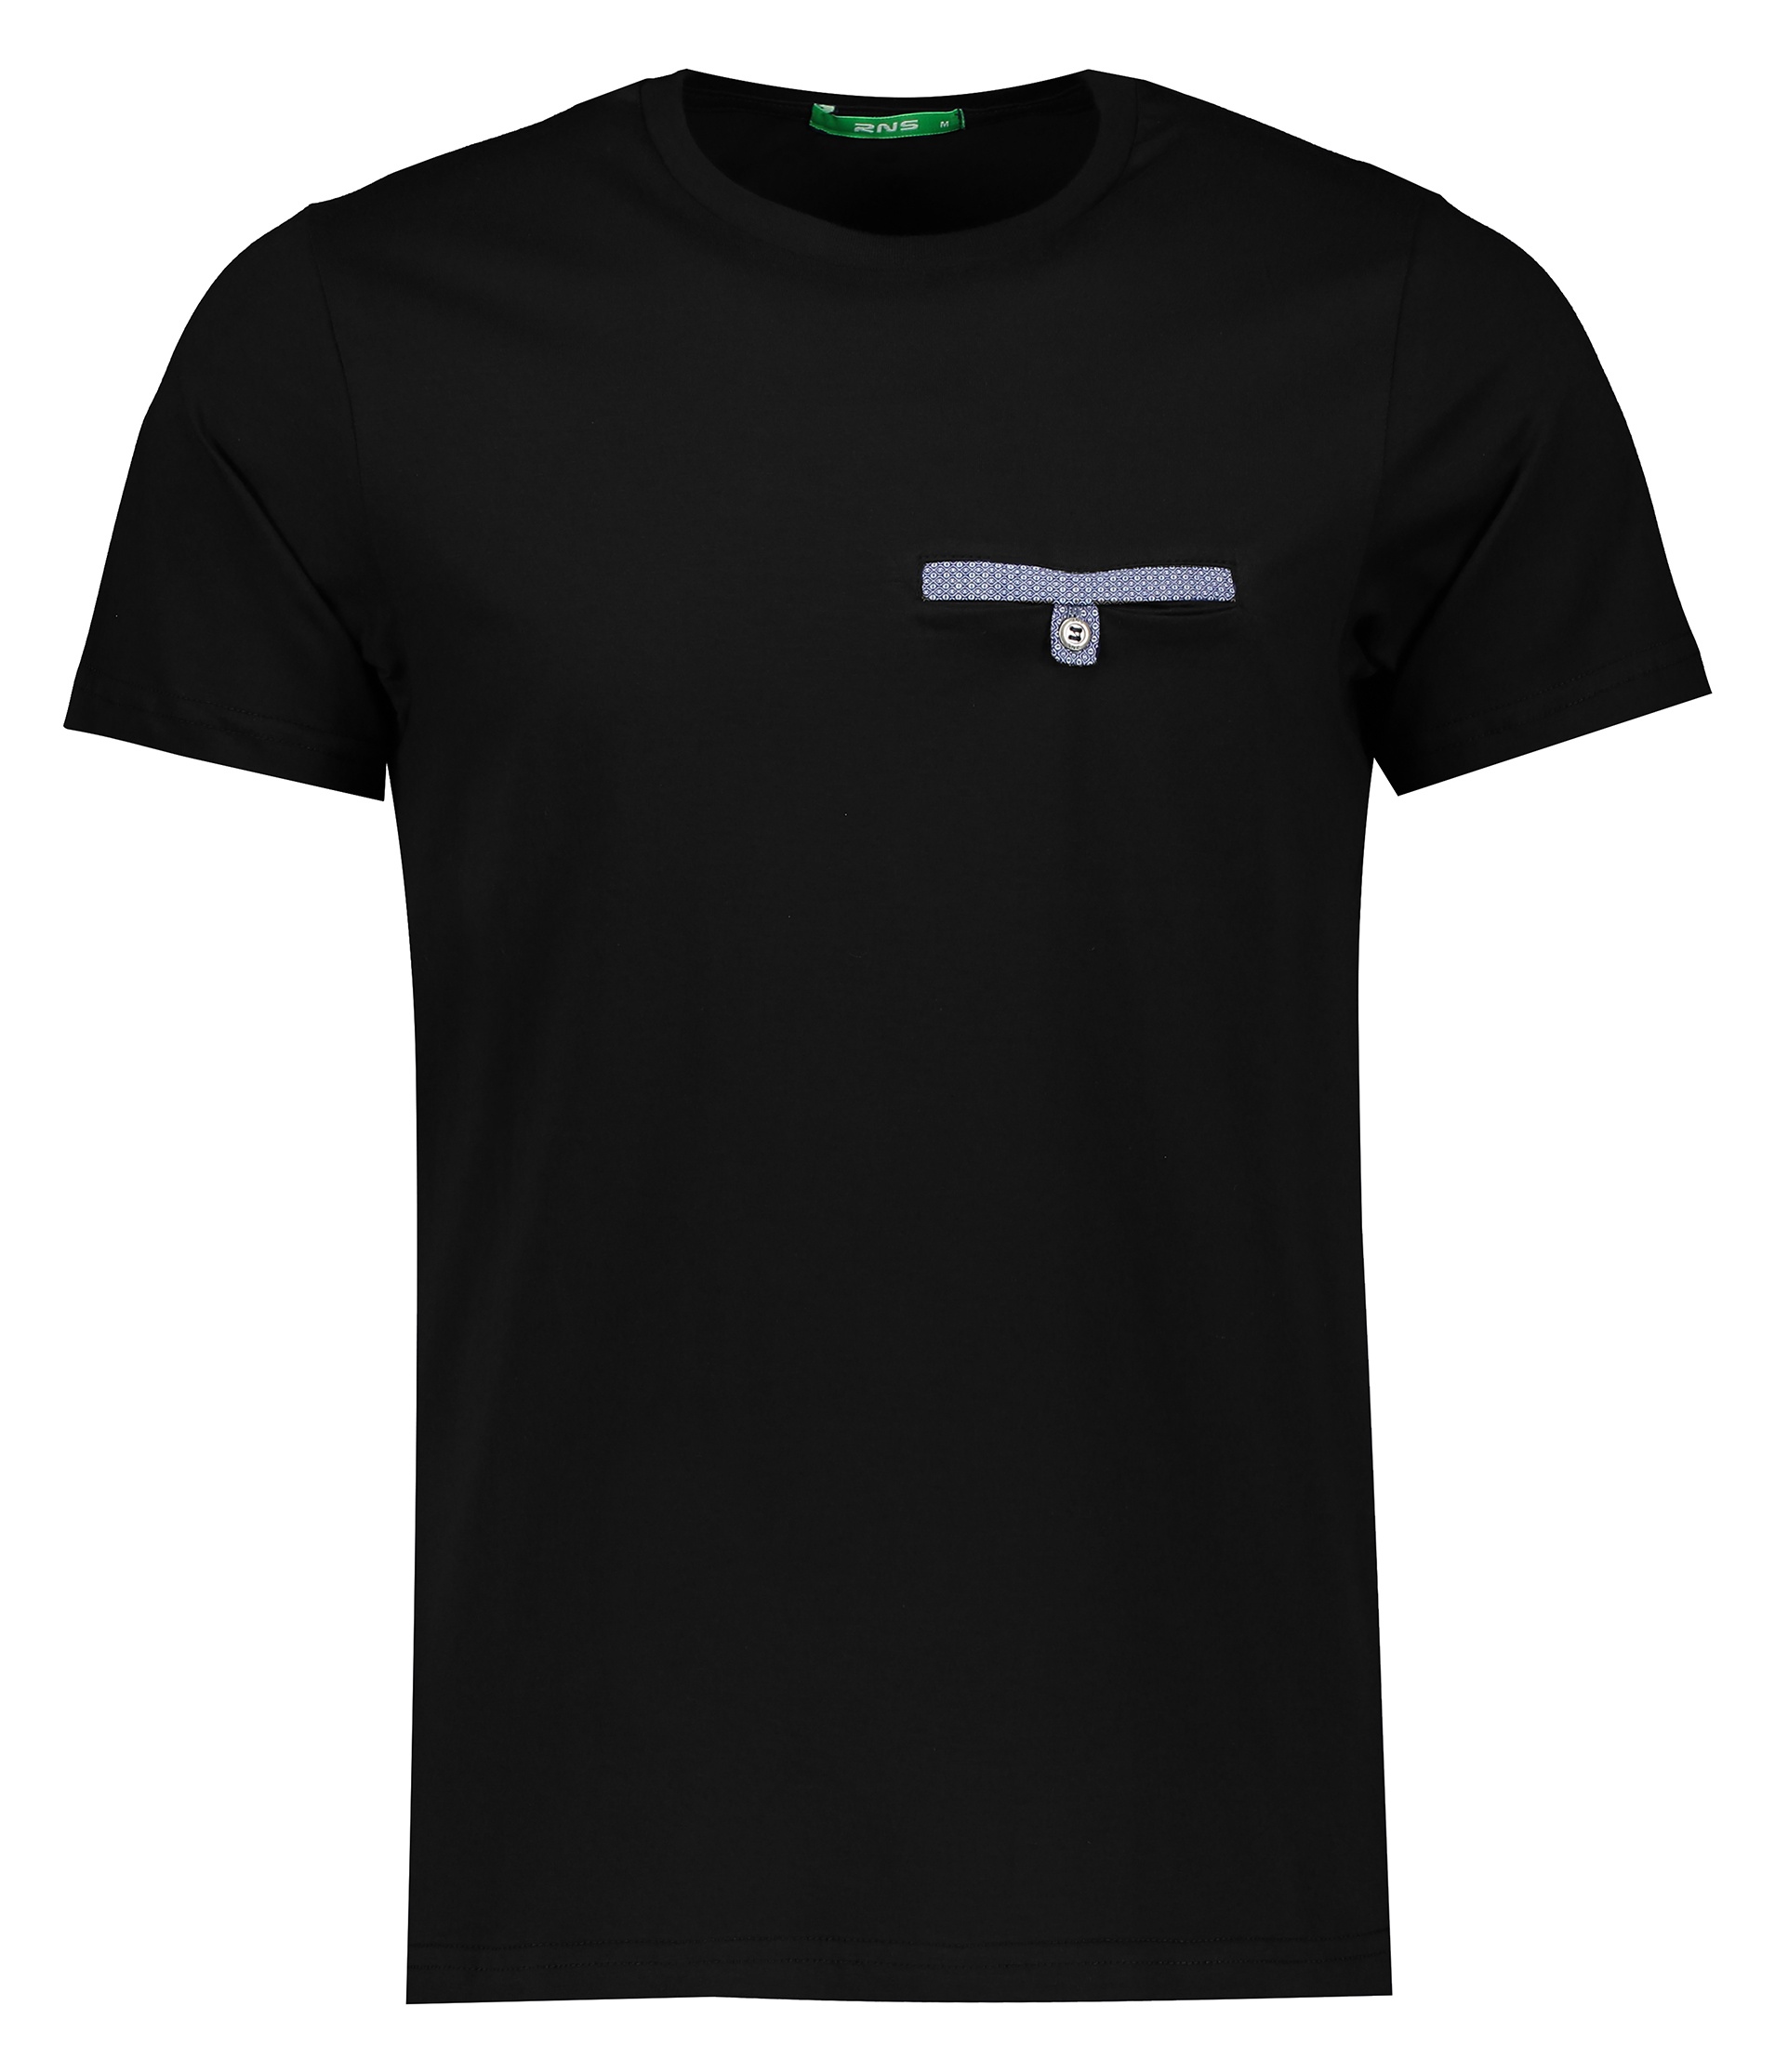 تی شرت مردانه آر ان اس مدل 1131116-99